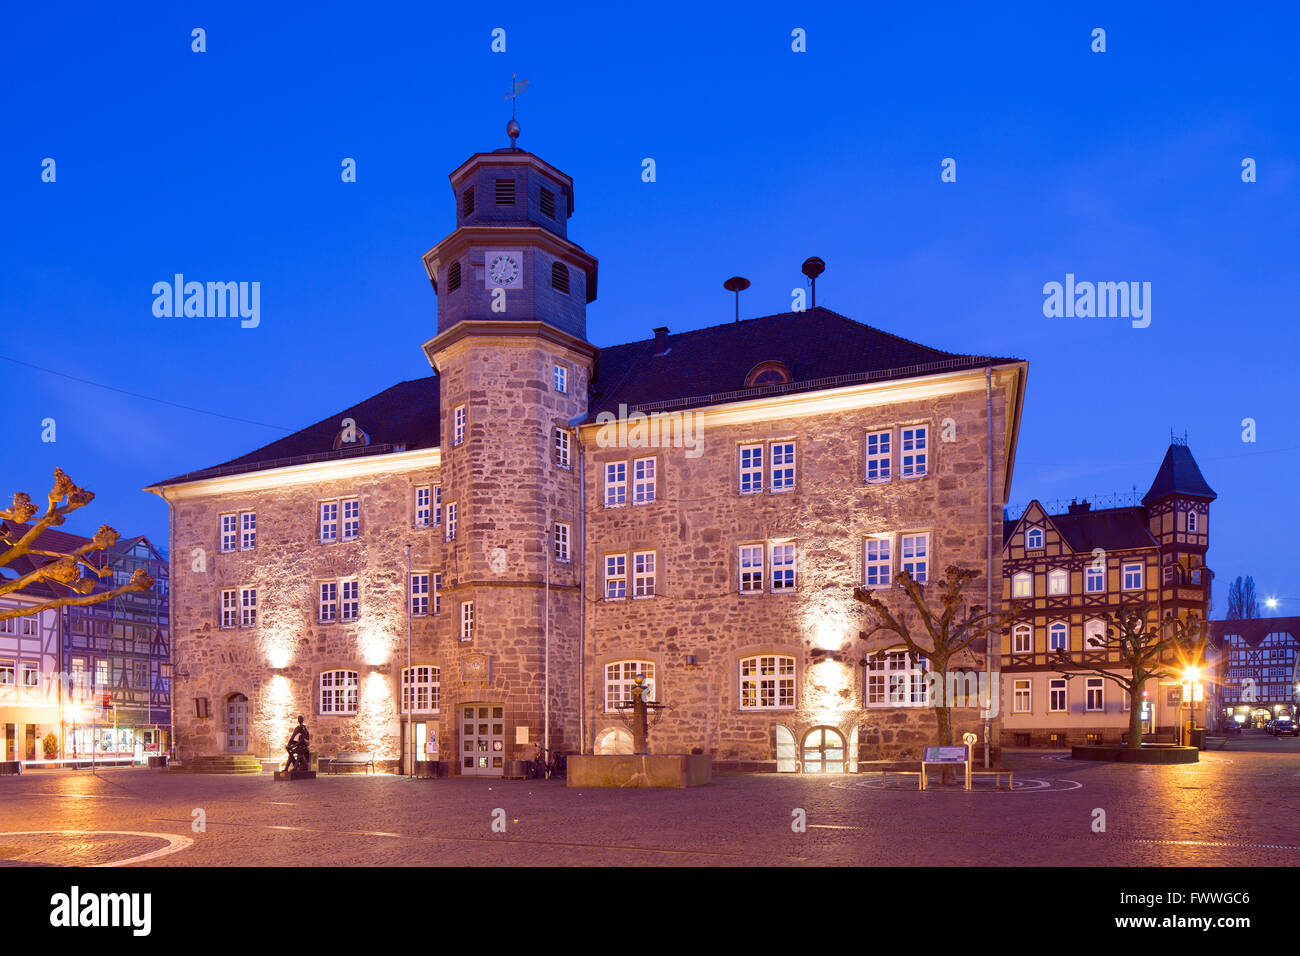 L'hôtel de ville au crépuscule sur le marché, Witzenhausen, Hesse, Allemagne Banque D'Images